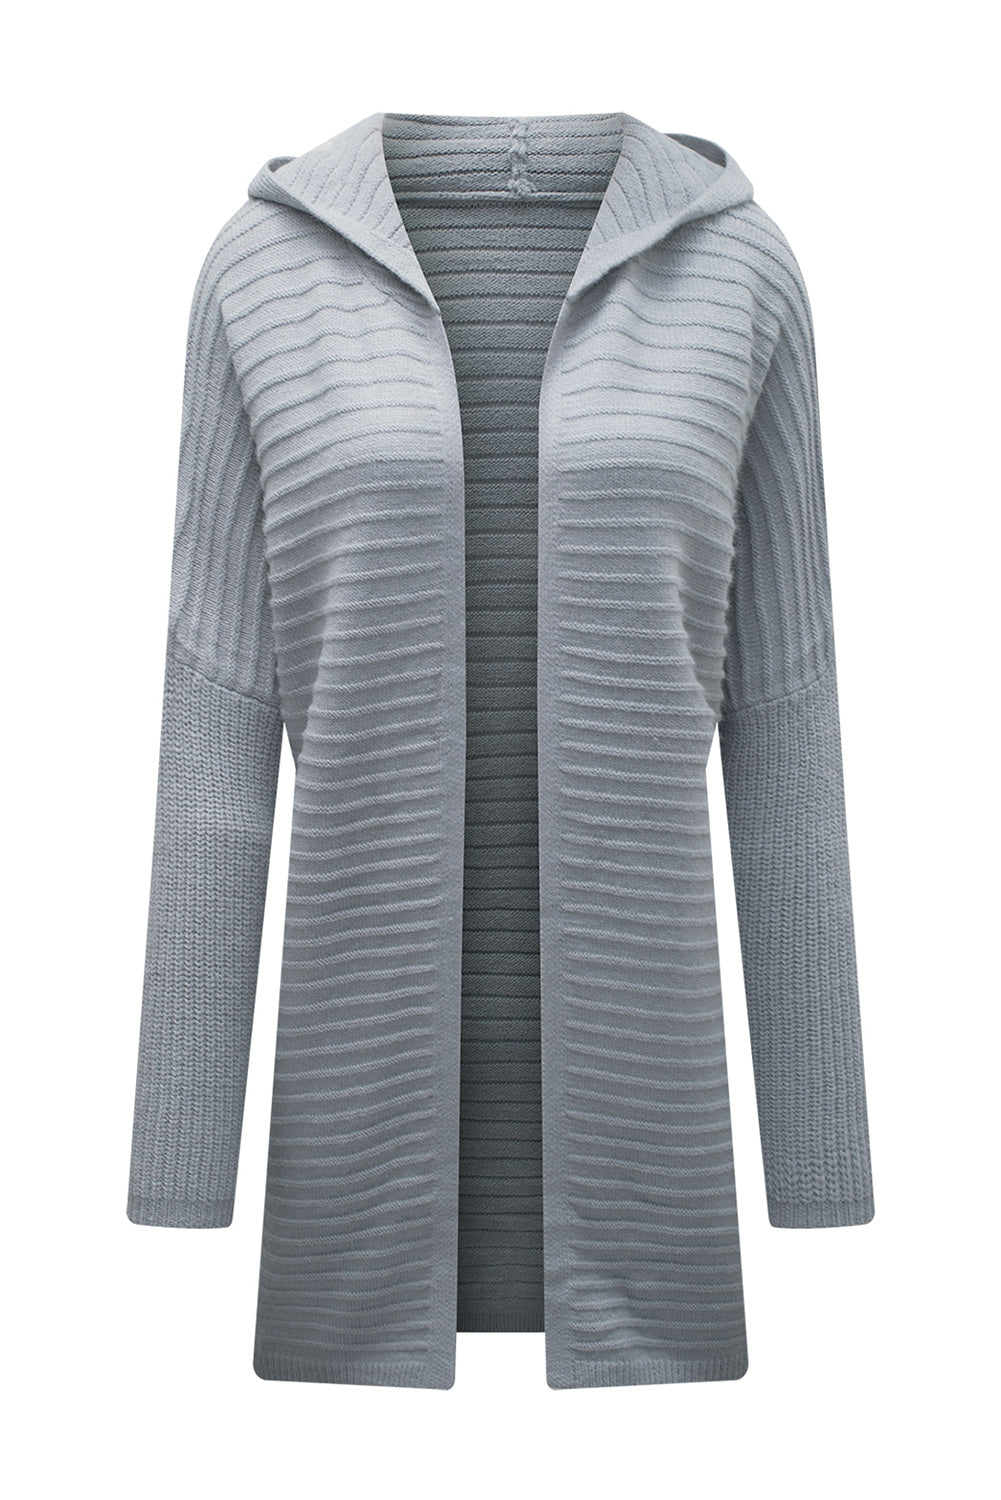 Cardigan à capuche gris en maille côtelée horizontale ouvert sur le devant